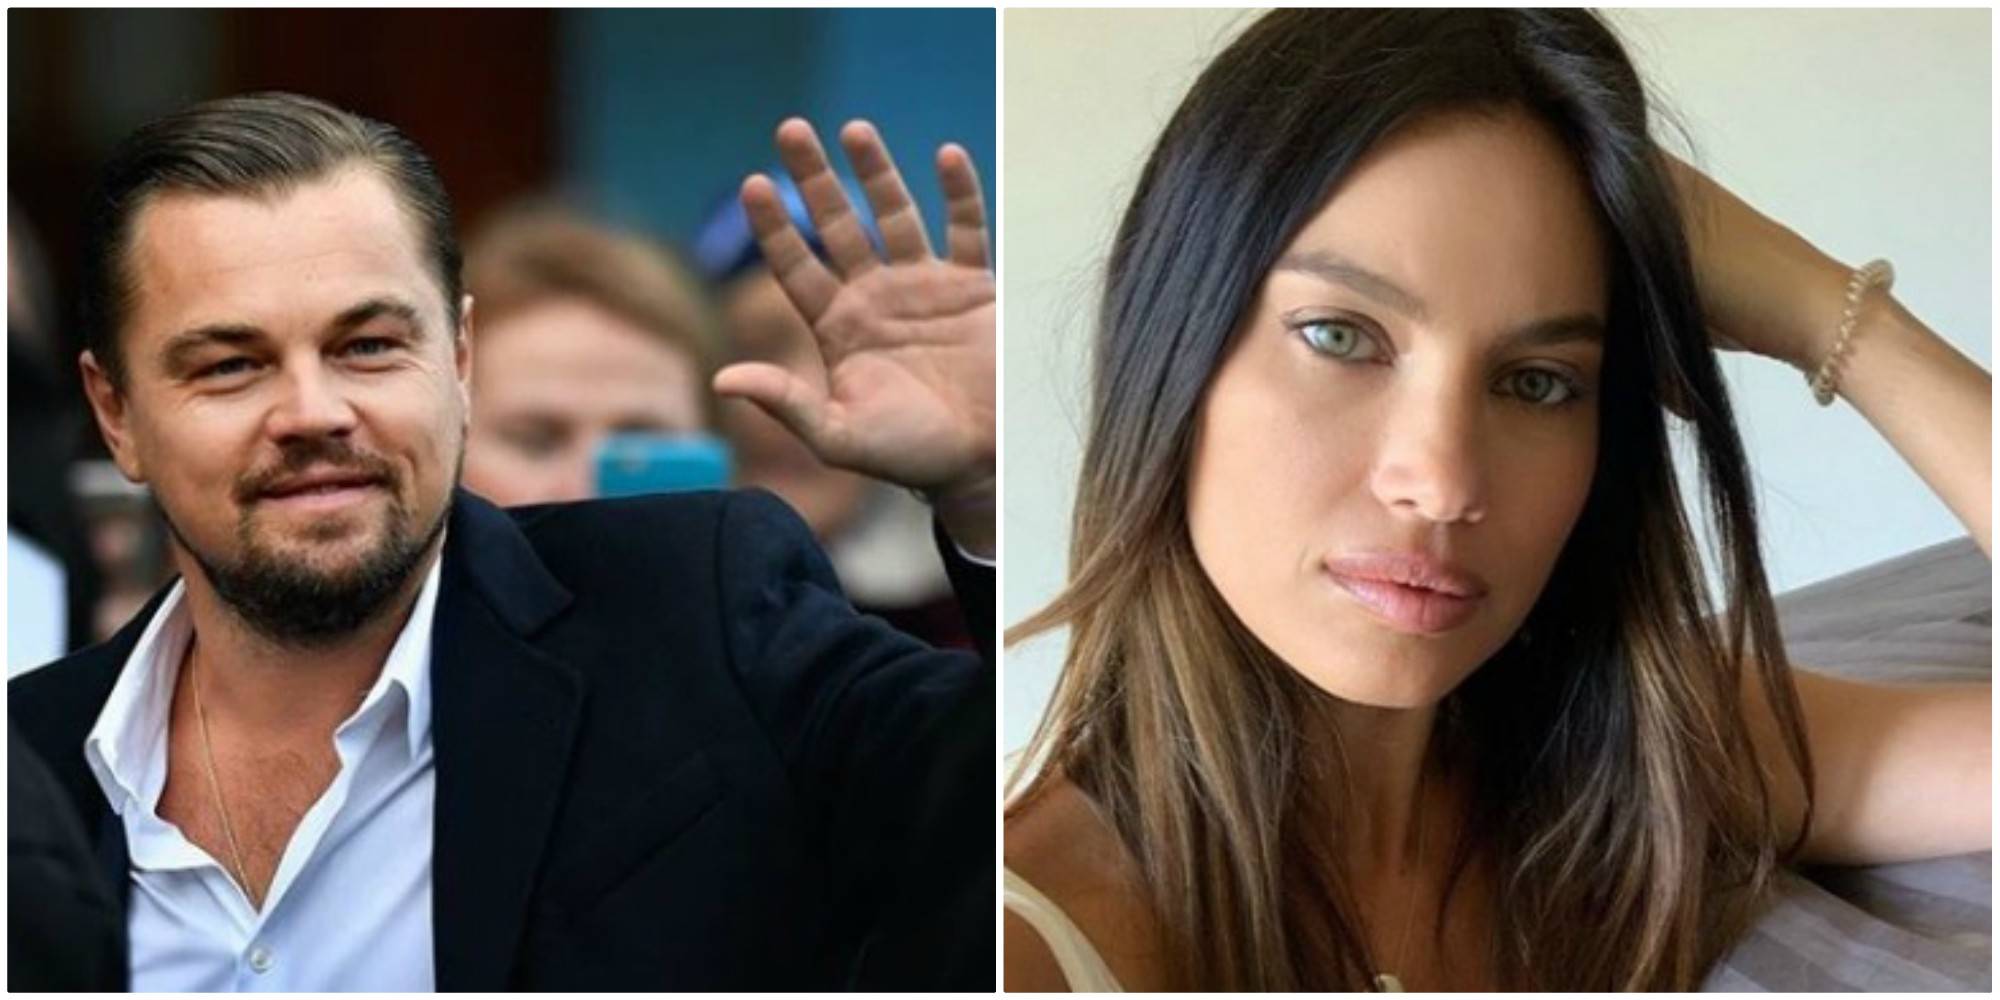 Alina Pușcău vorbește despre relația cu Leonardo DiCaprio! „Eu îi cunosc familia și prietenii apropiați”